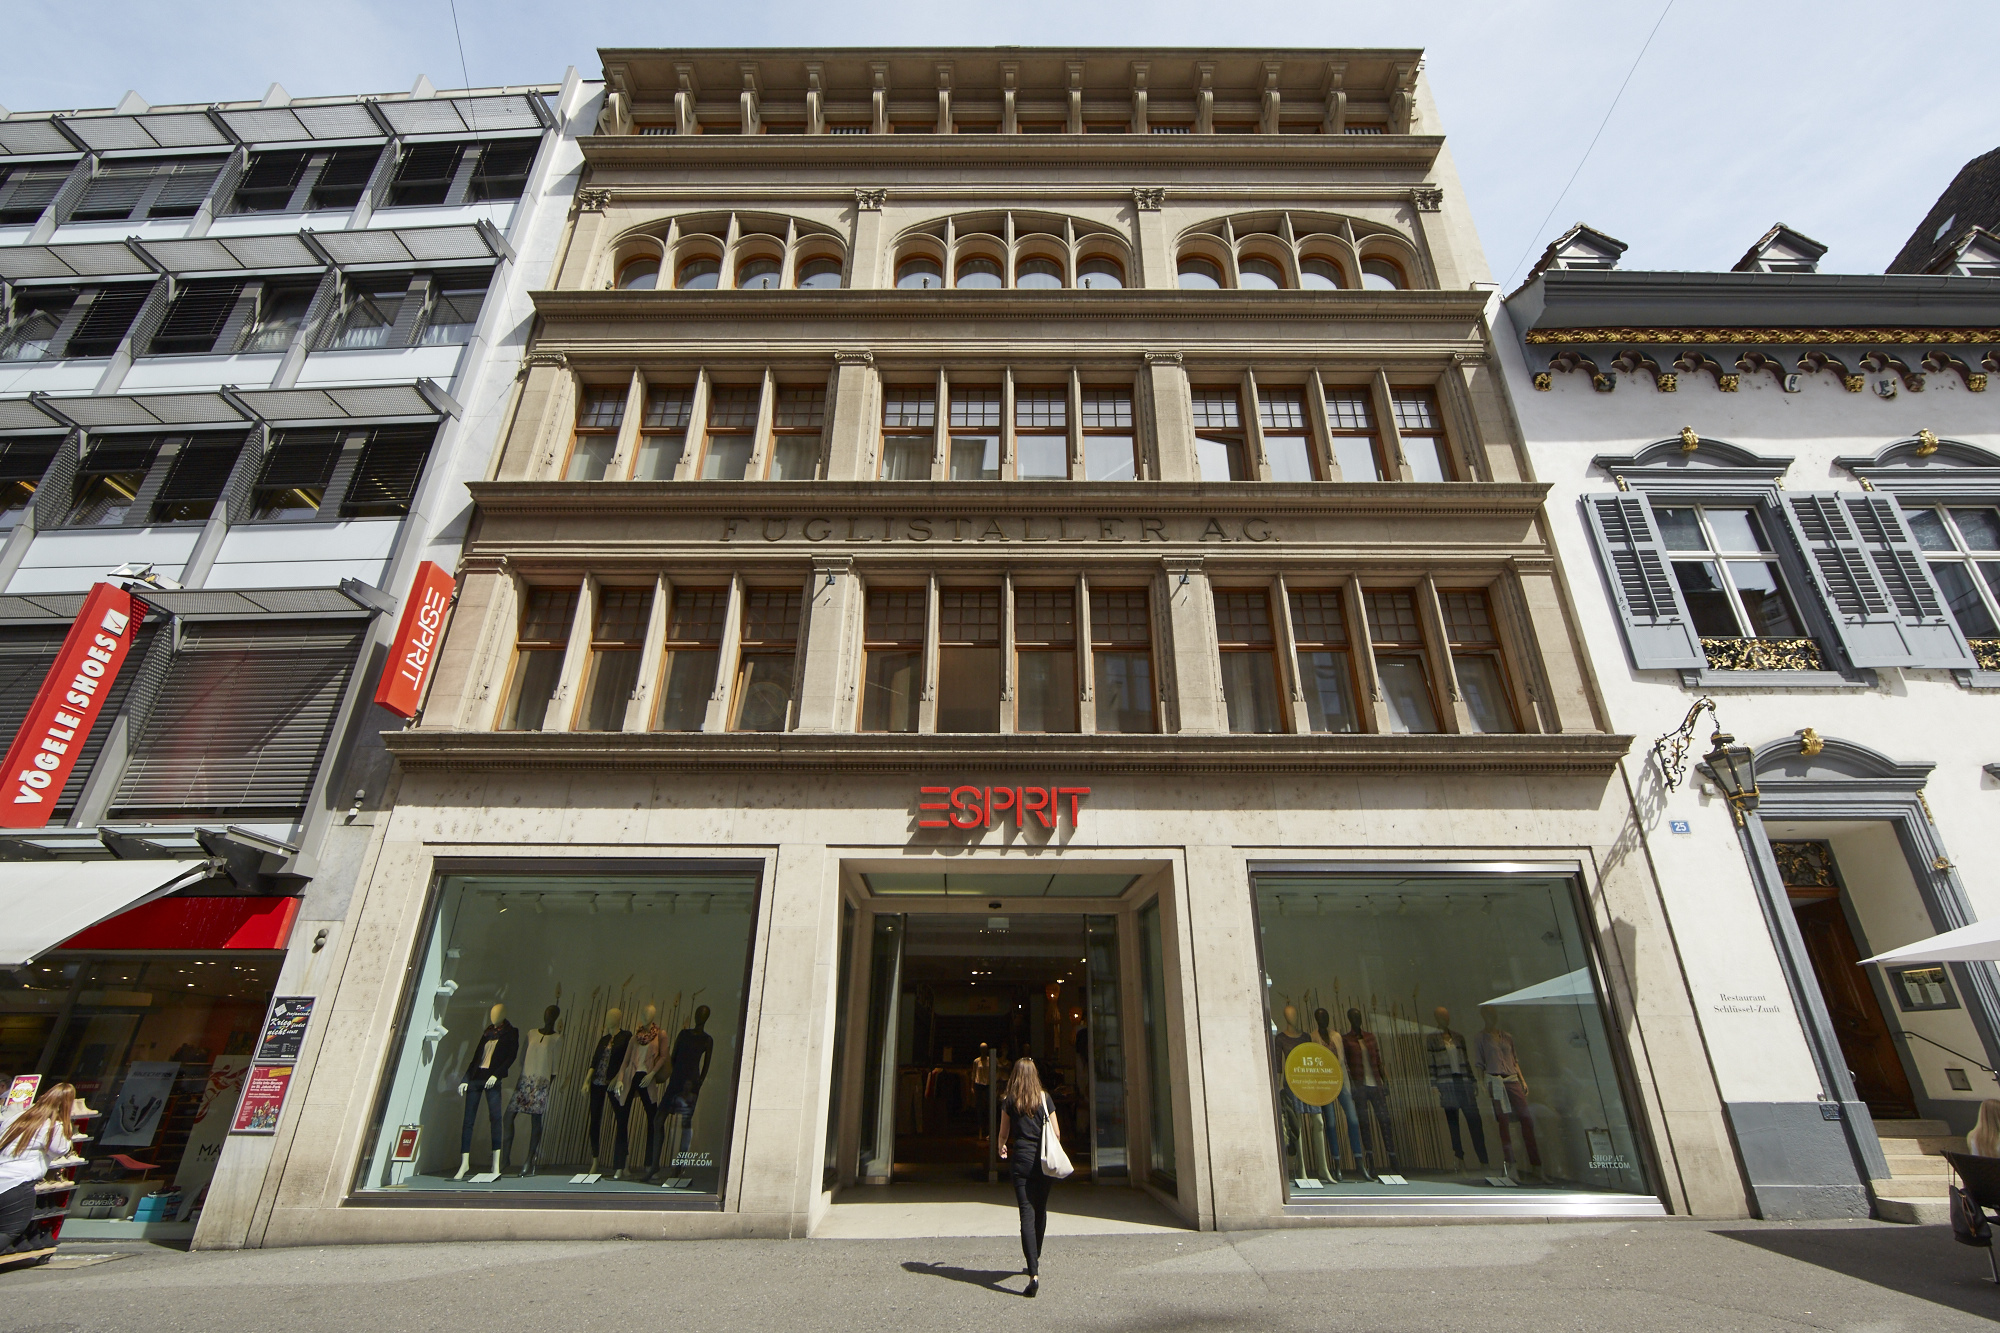 Das Gebäude an der Freien Strasse 23 gehört der Fondsgesellschaft Aachener Grundvermögen. Esprit mietet dort über 900 Quadratmeter Ladenfläche.